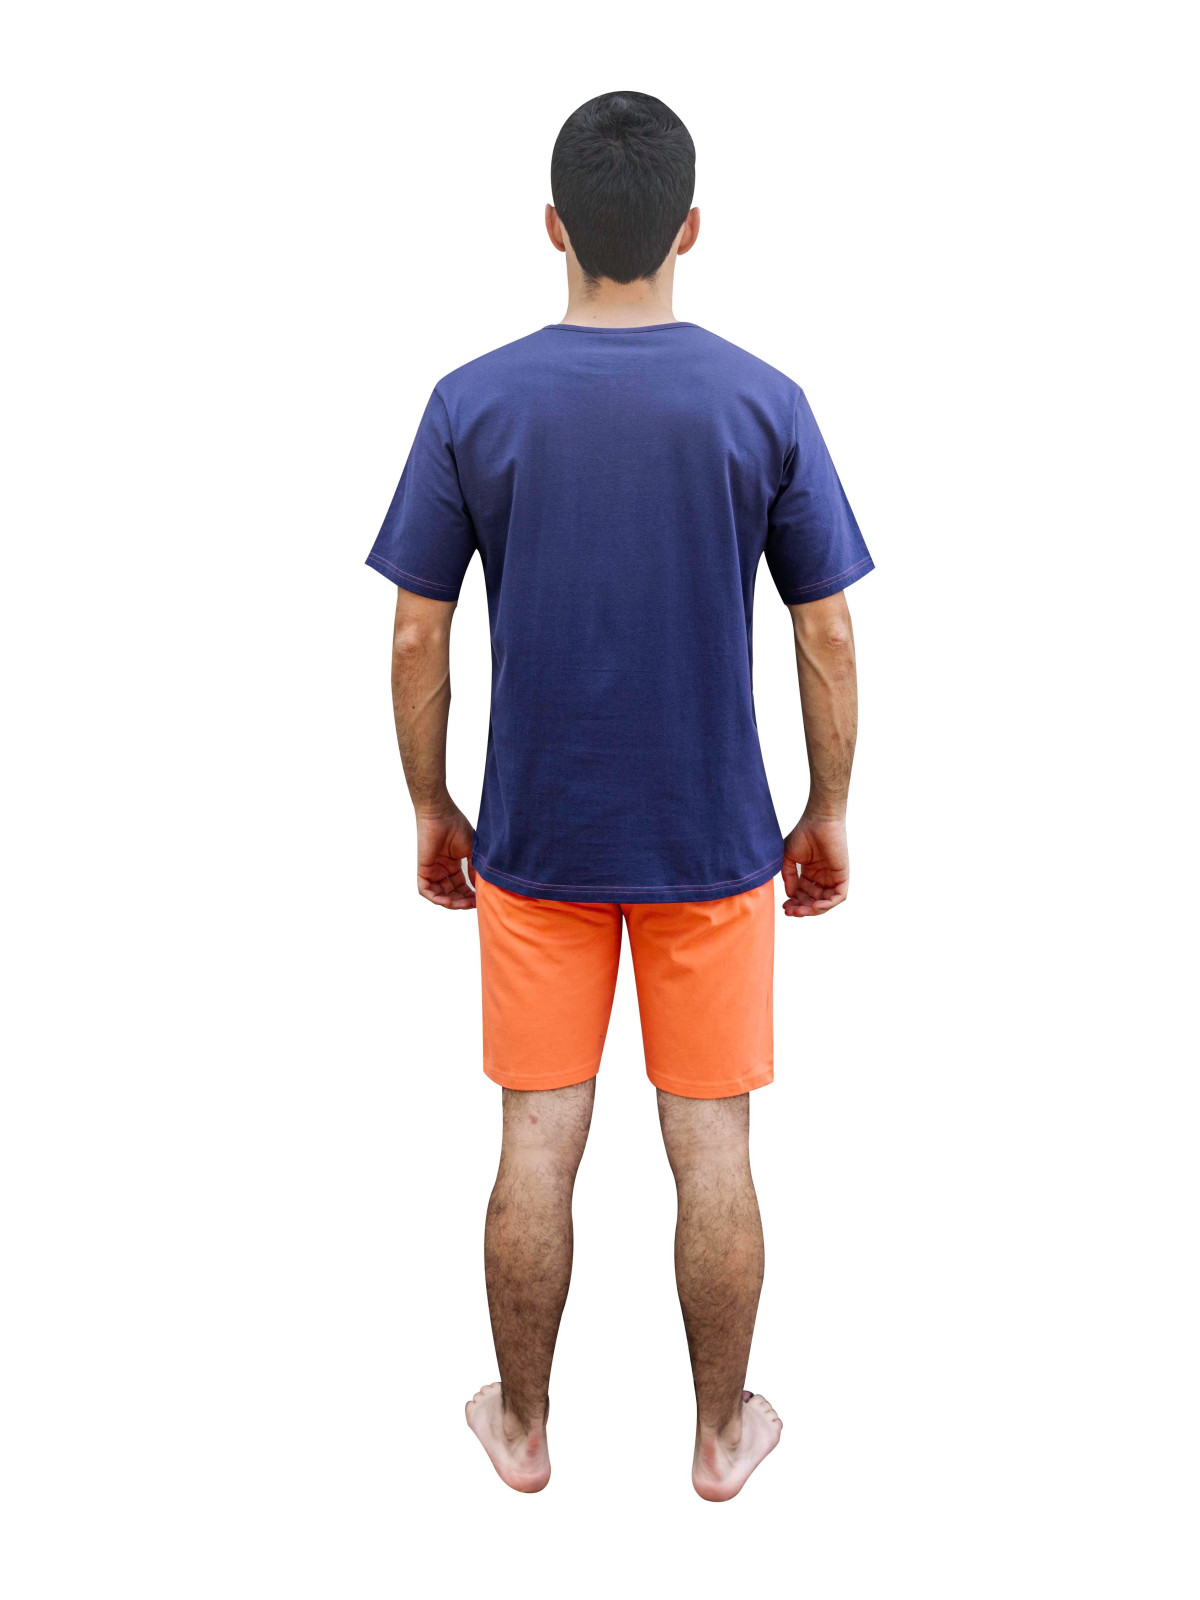 Pyjama court haut bleu- short corail « Homme à croquer ¤ Sans modération ¤ »